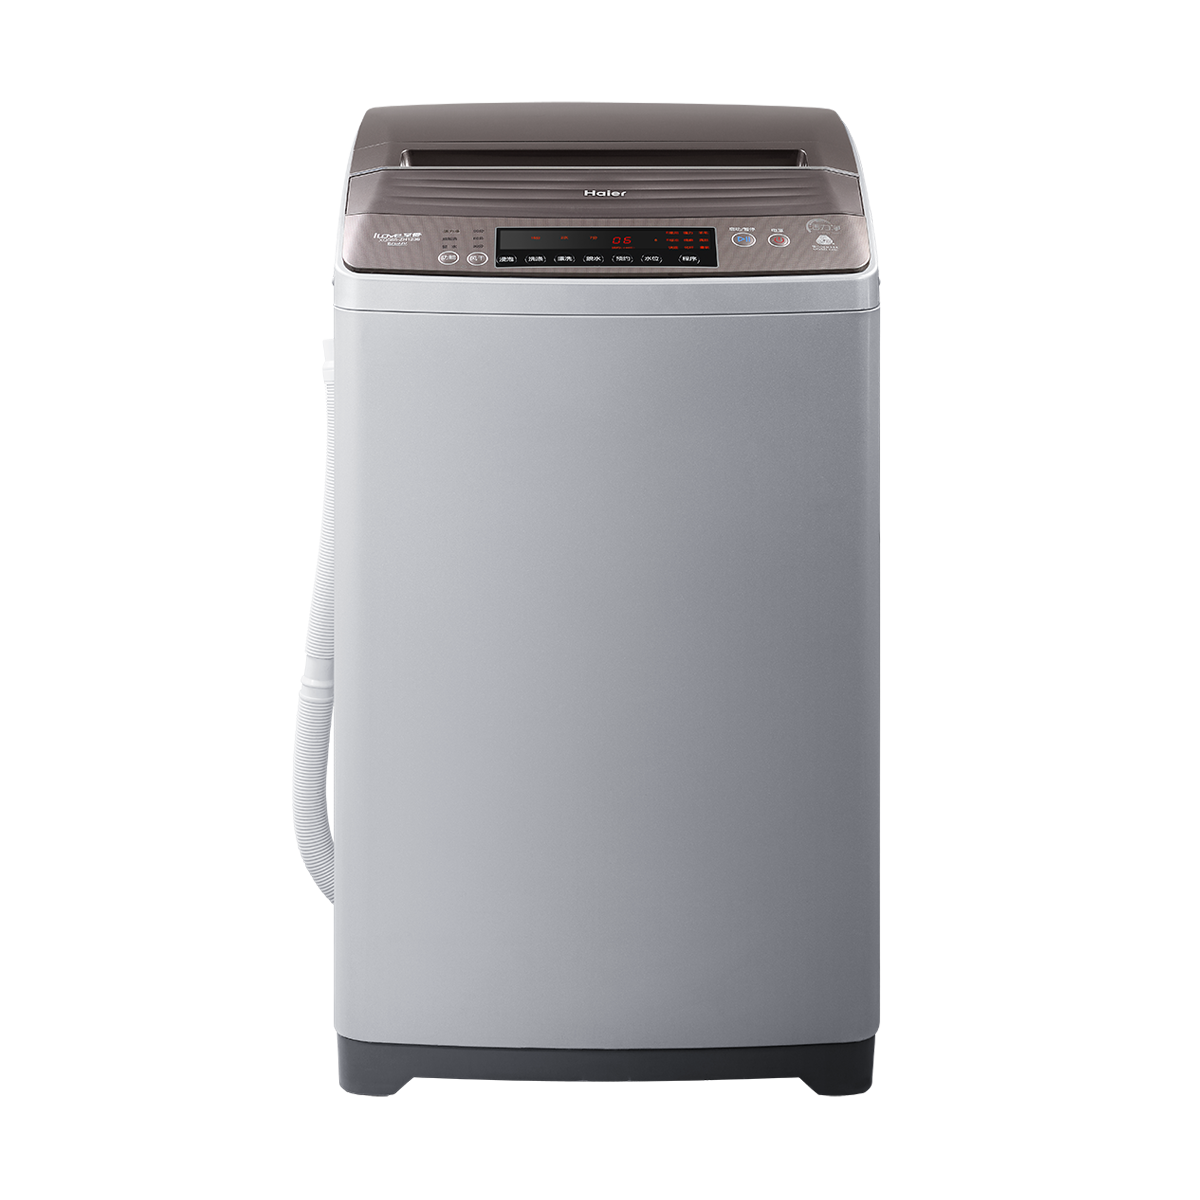 海尔Haier洗衣机 XQS65-ZH1236 说明书